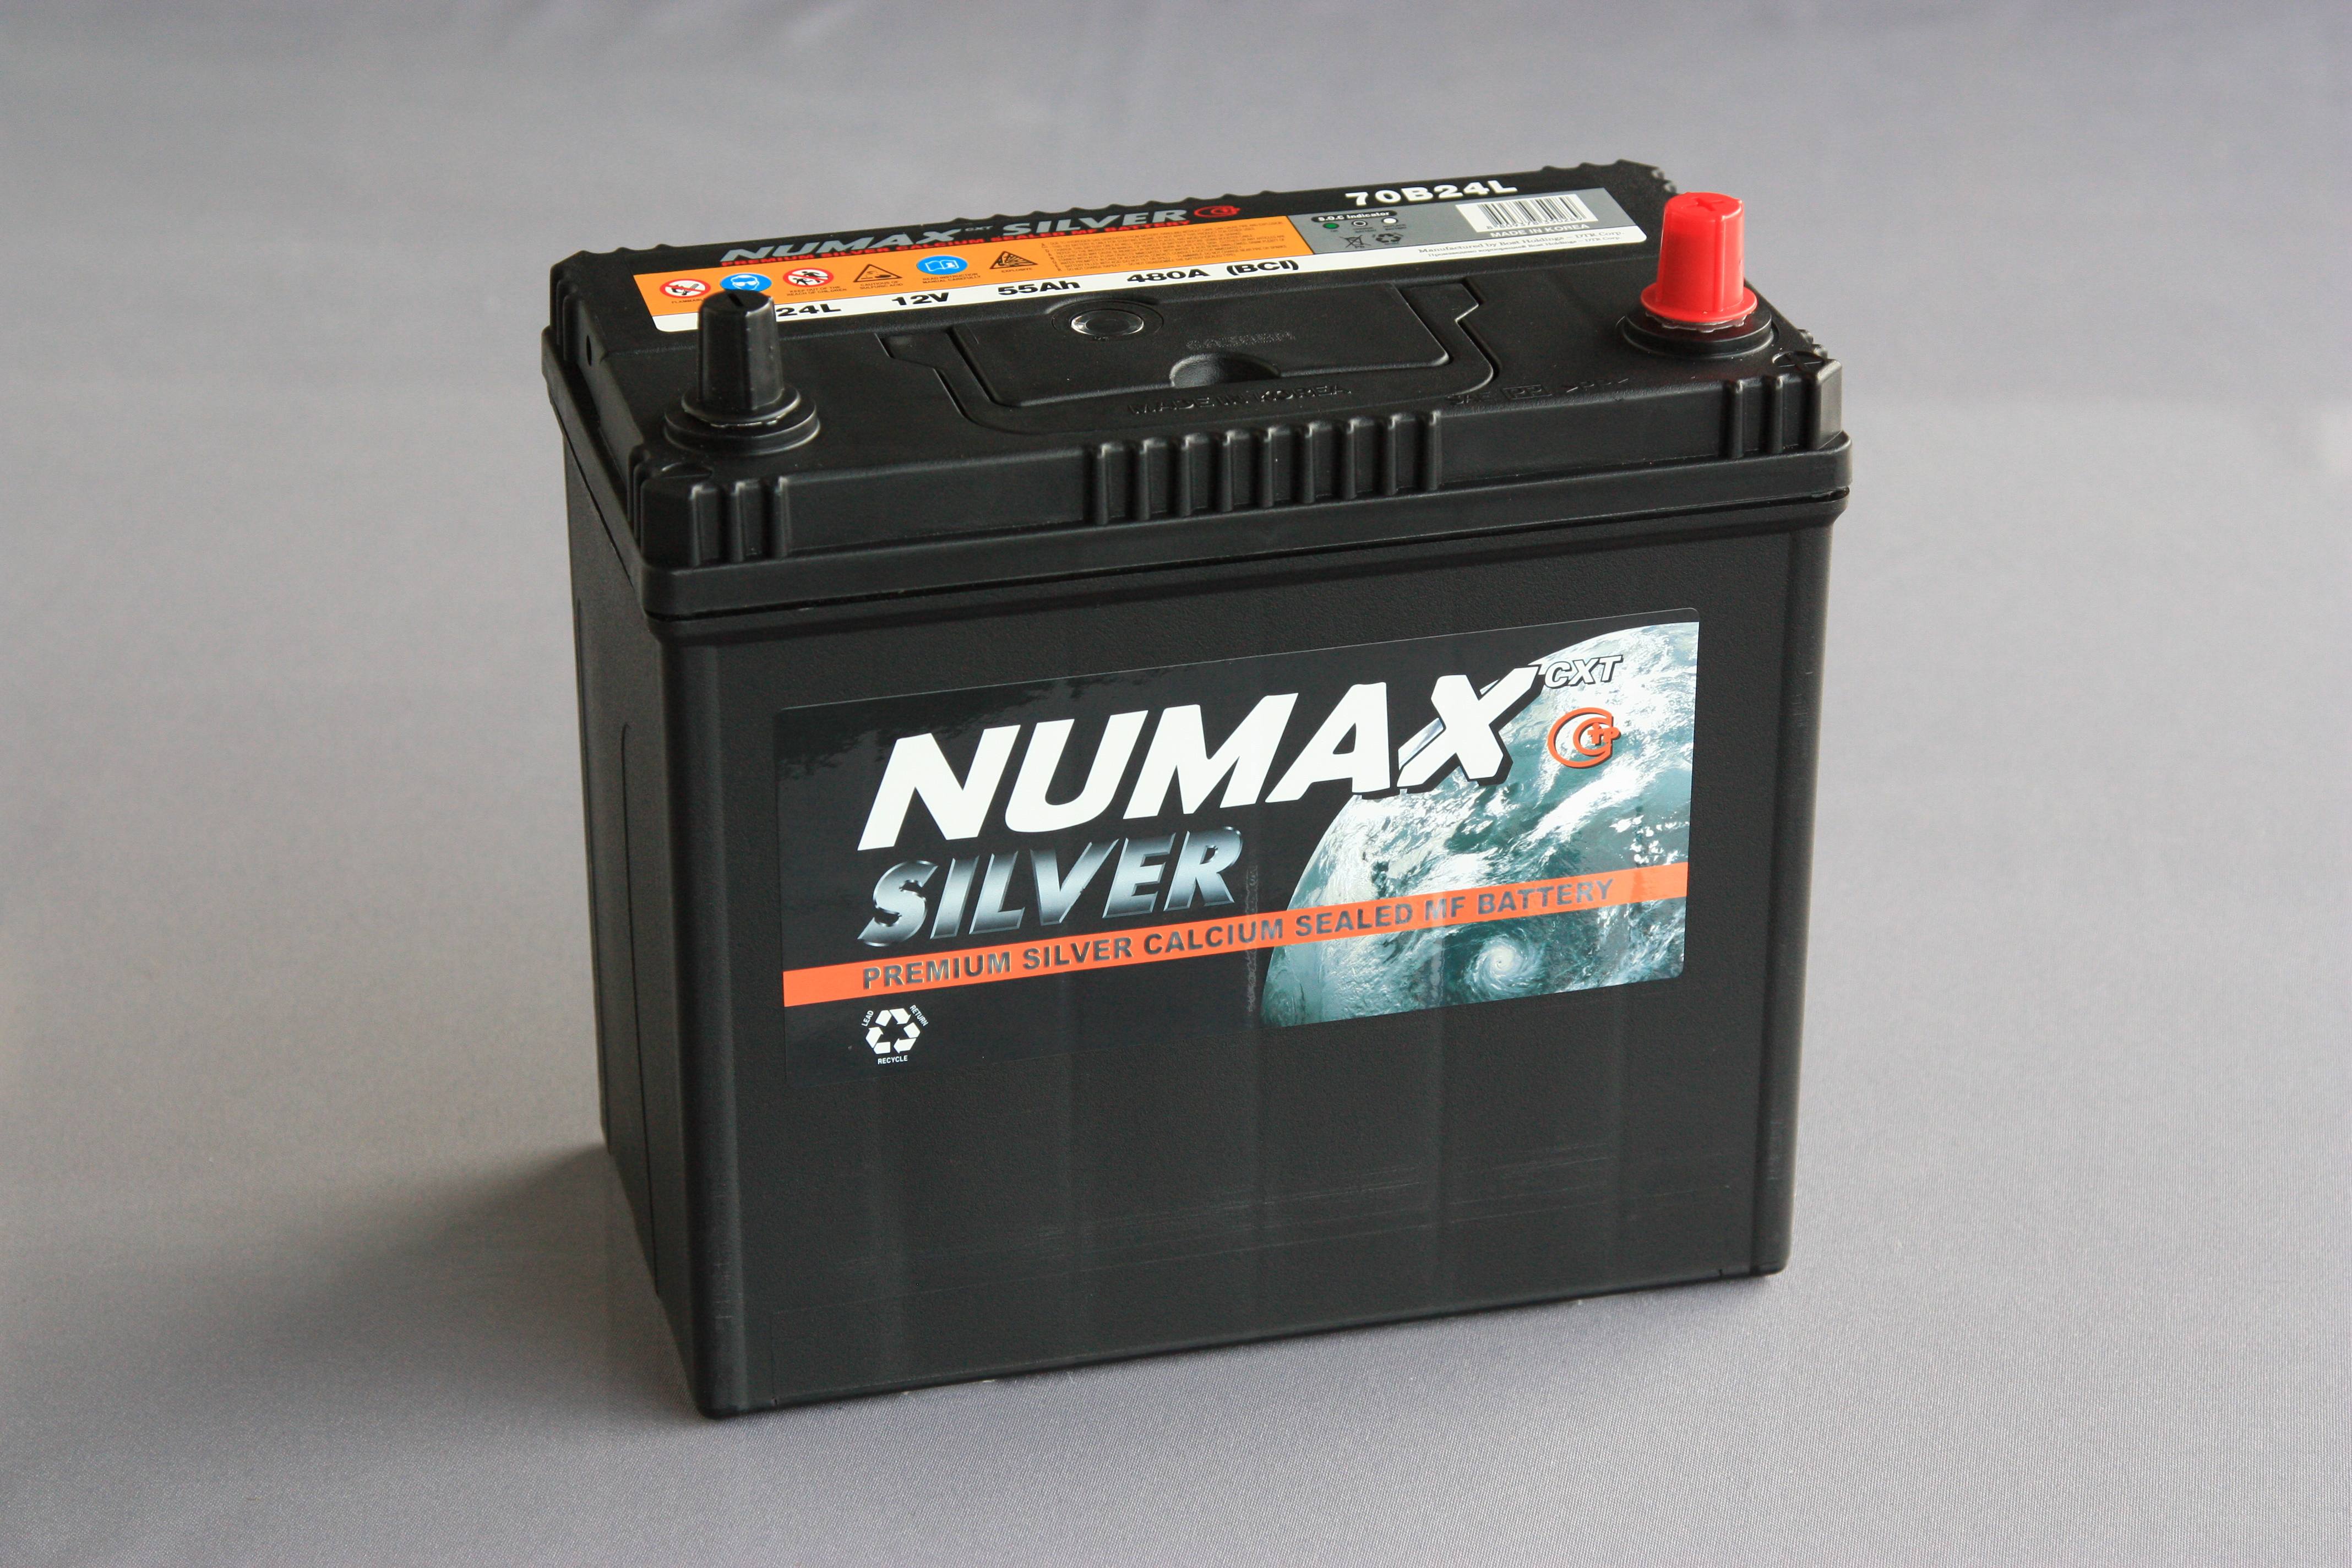 NUMAX SILVER 6CT - 58 A1  о.п.  тонк. кл. яп. ст. (58Ah, EN 510A)